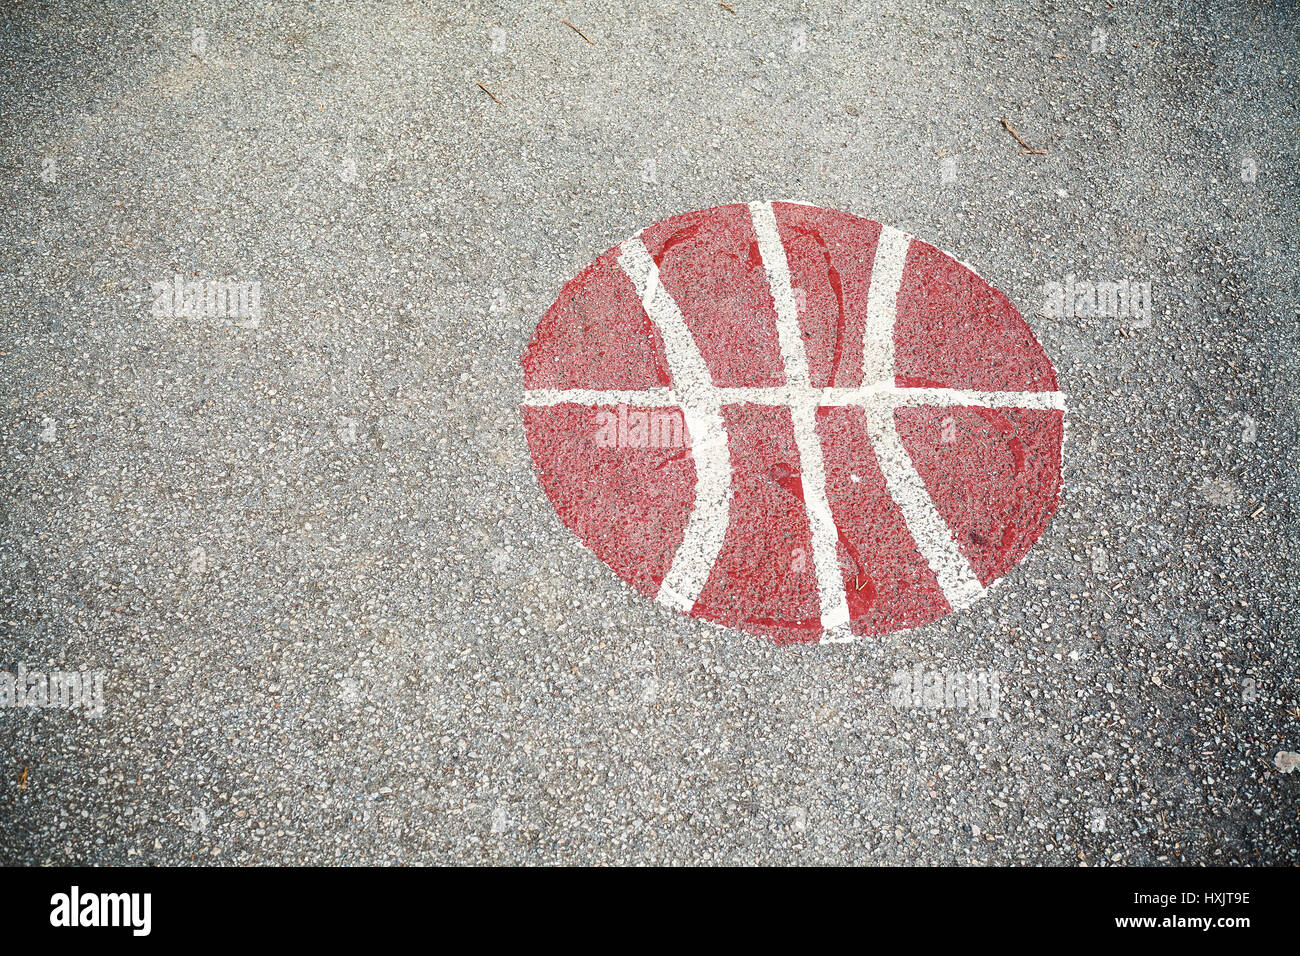 Details zu einem Basketball-Hof asphalt Zeichen. Stockfoto